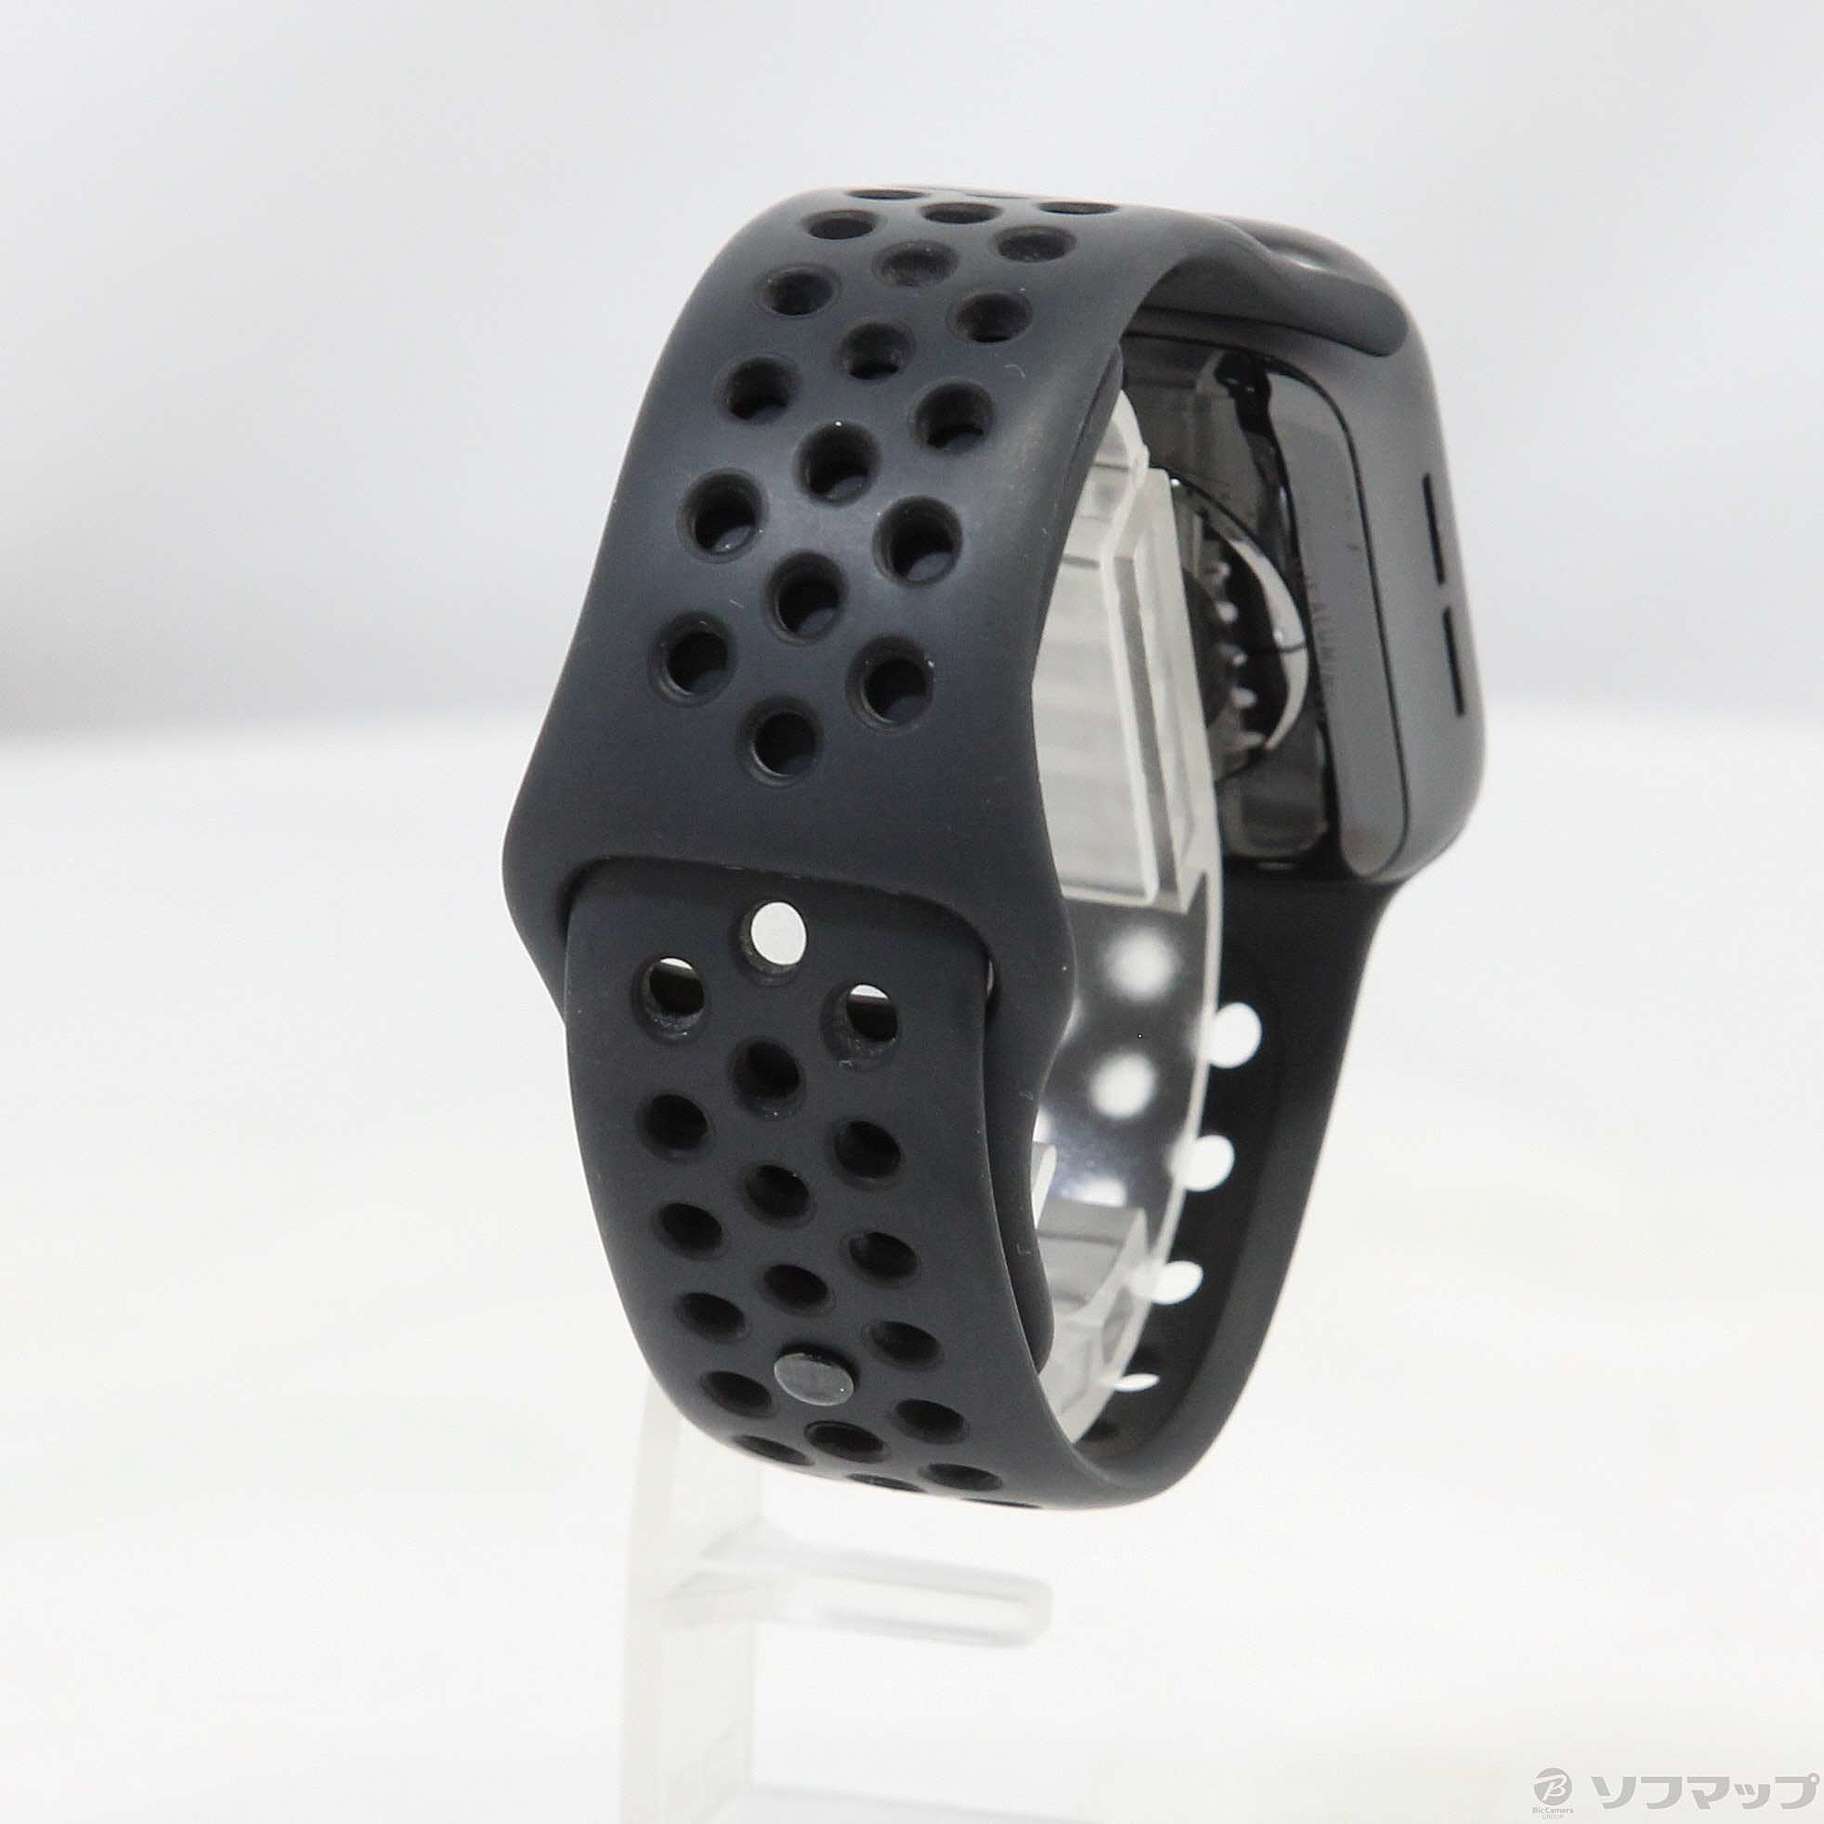 有防滴防水機能Apple Watch Series 4 Nike+ グレイアルミニウム アンス